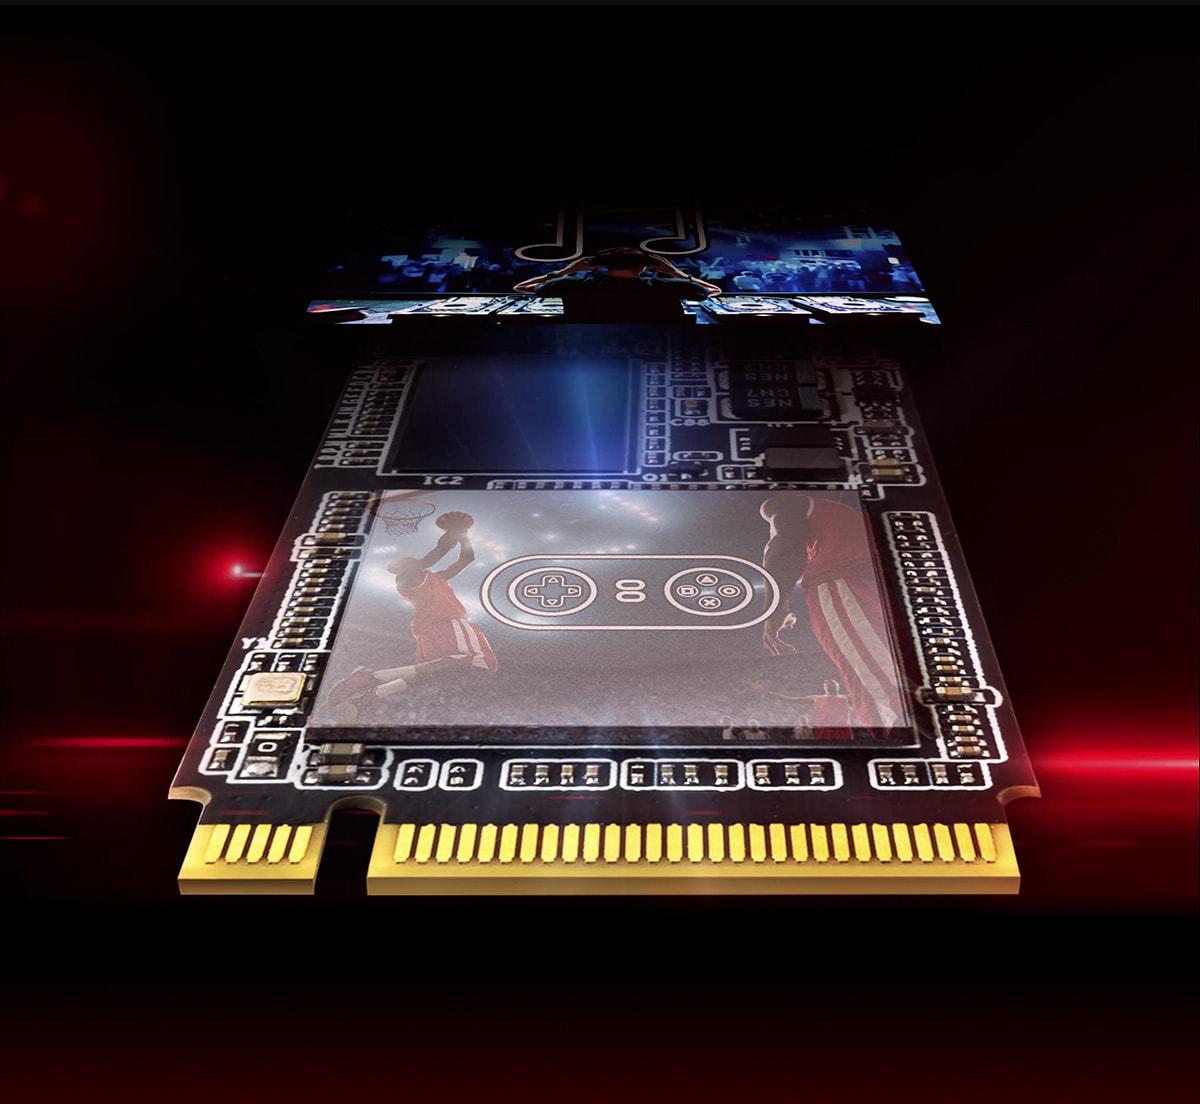 Pamięć flash 3D NAND — większa pojemność, wydajność i niezawodność